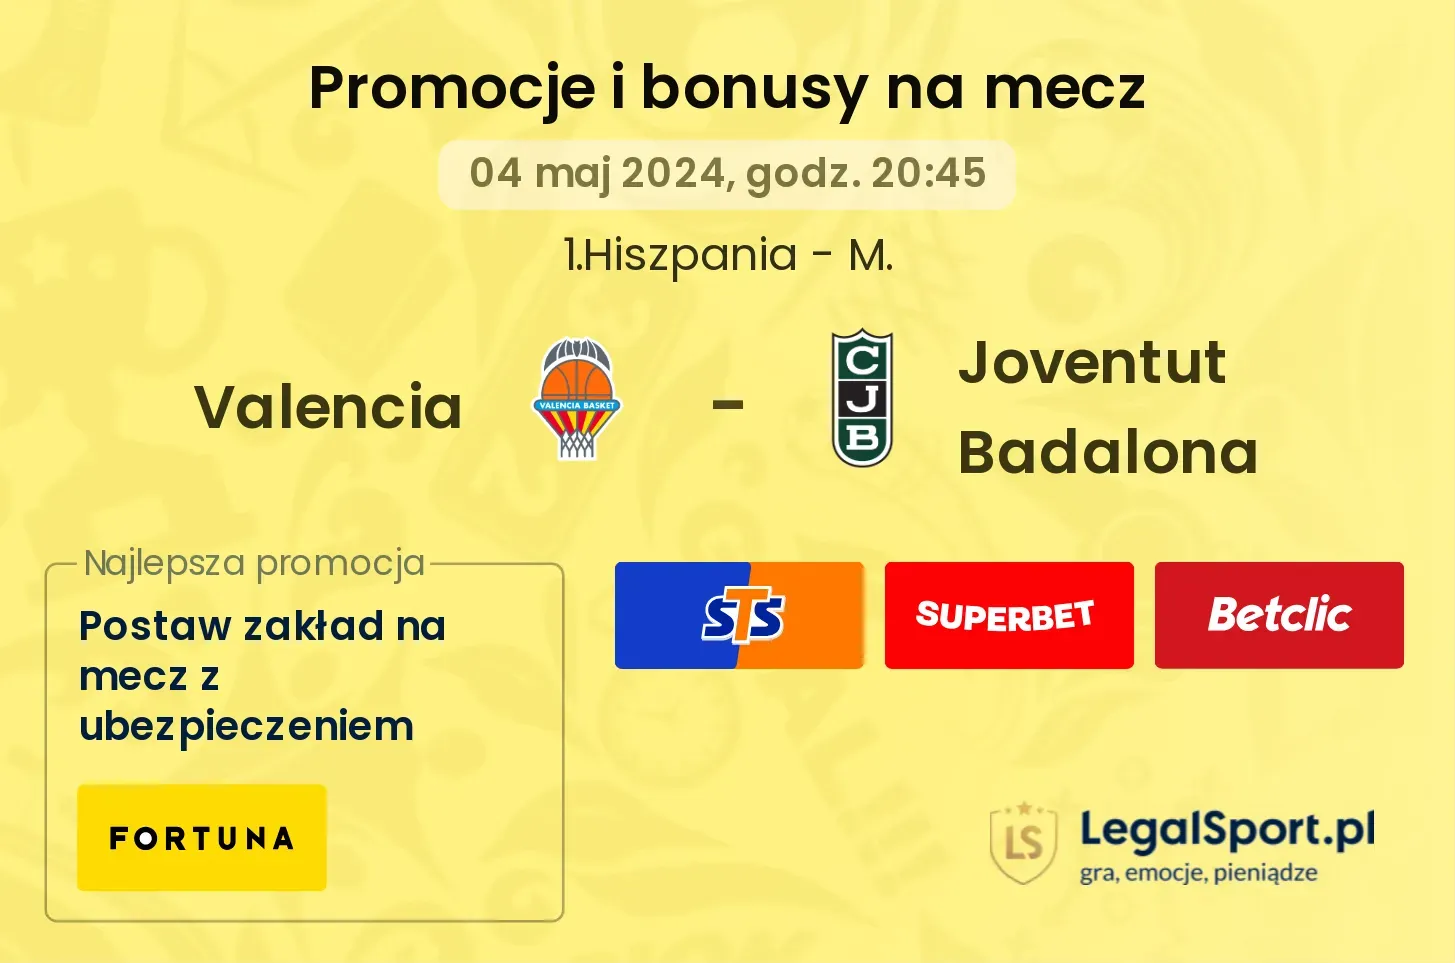 Valencia - Joventut Badalona promocje bonusy na mecz